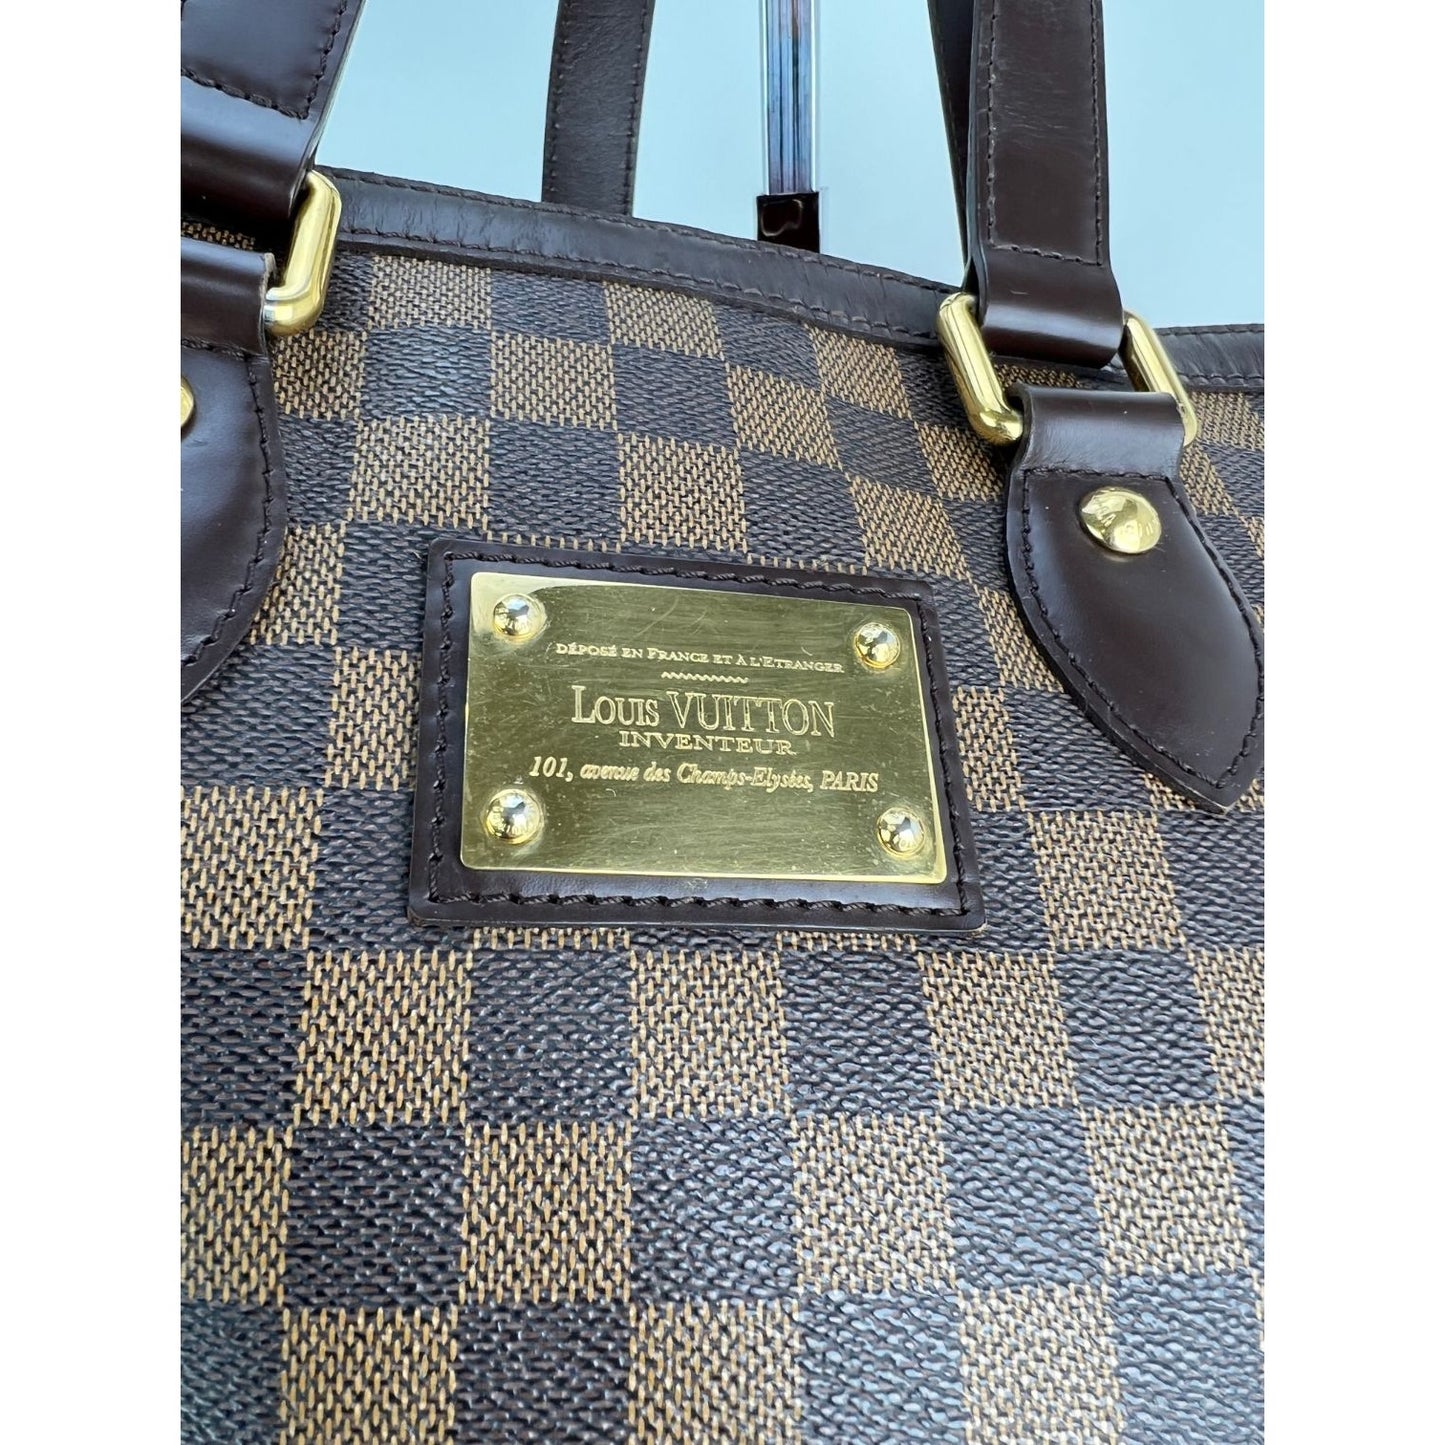 Lot - A Louis Vuitton Damier Azur Hampstead PM shoulder bag